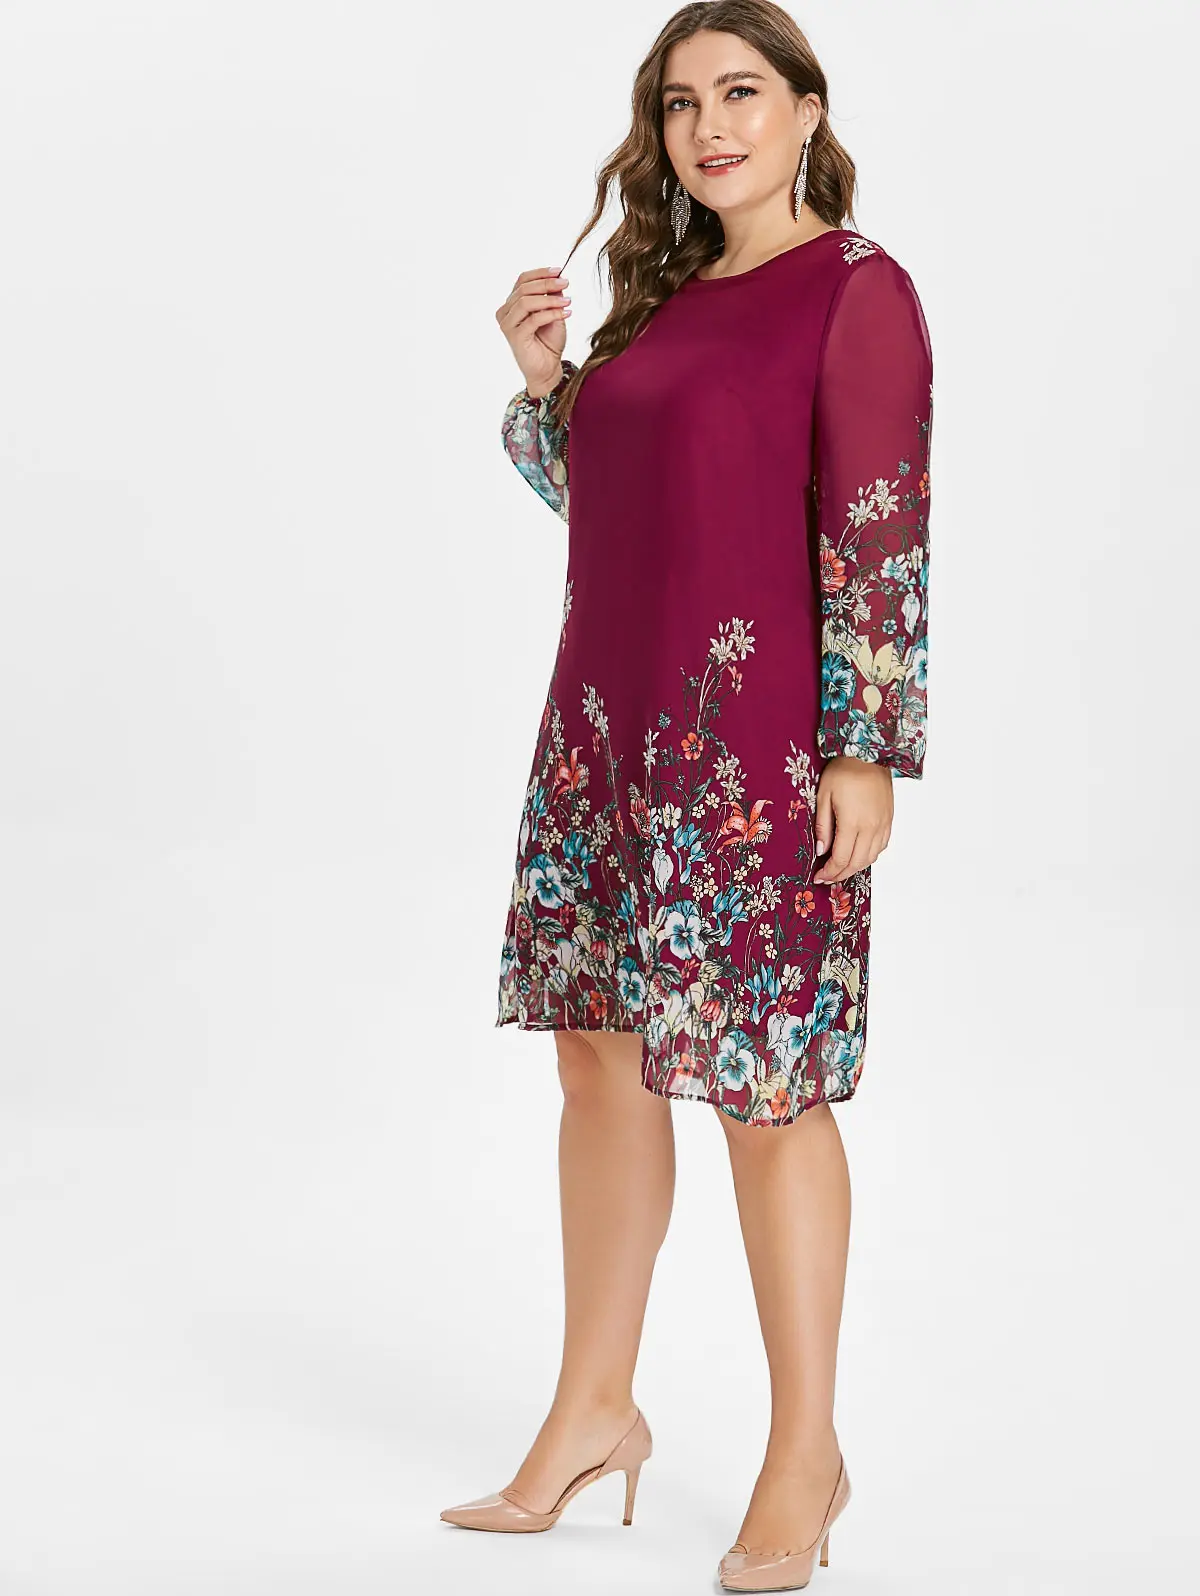 Wipalo Цветочное платье свободного кроя с длинными рукавами, полупрозрачное шифоновое платье 5XL, большой размер, туника